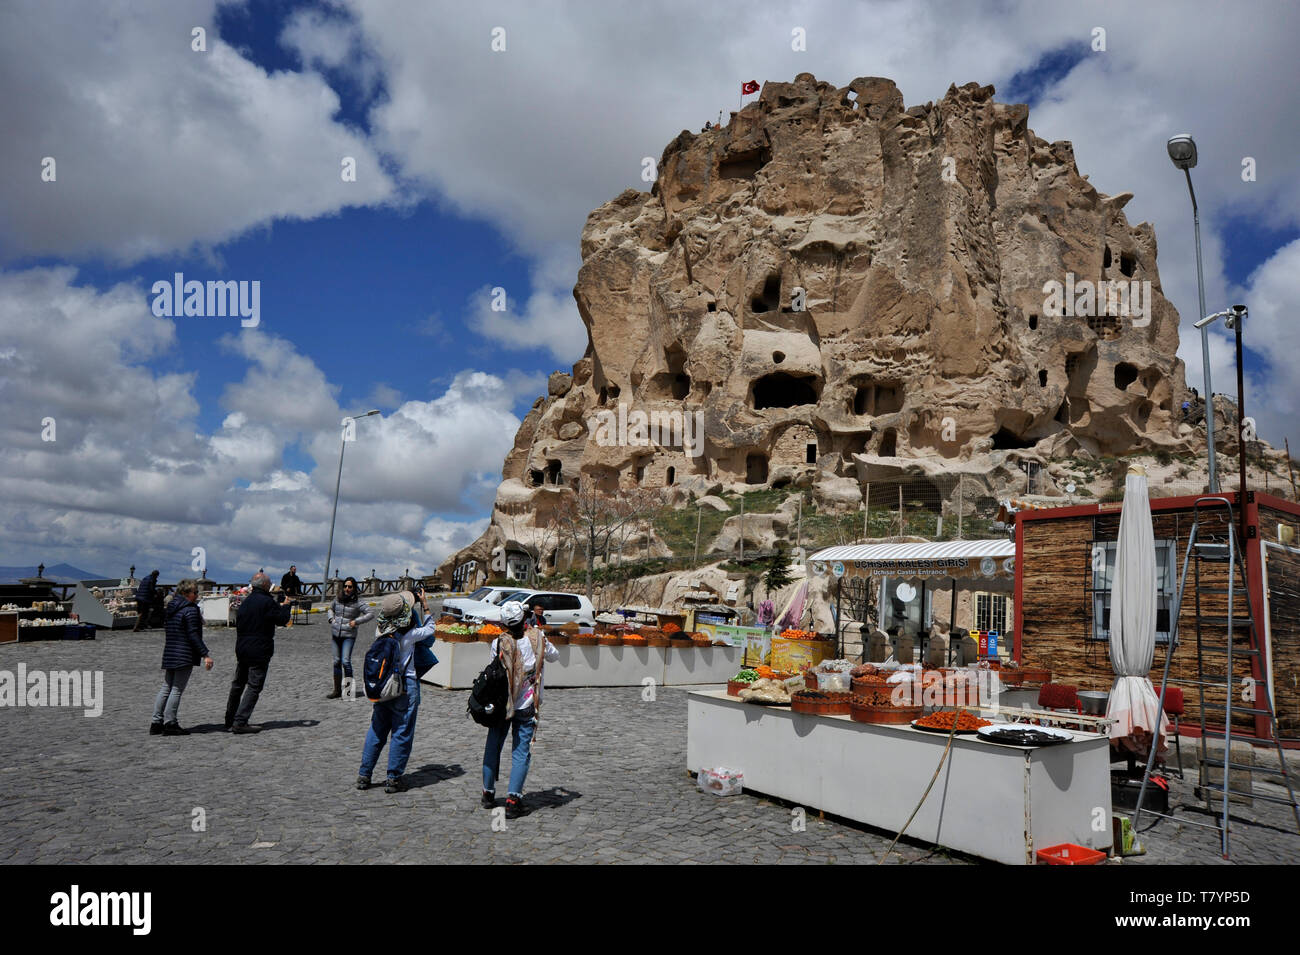 The Castle, Uchisar, Cappadocia, Turkey Stock Photo